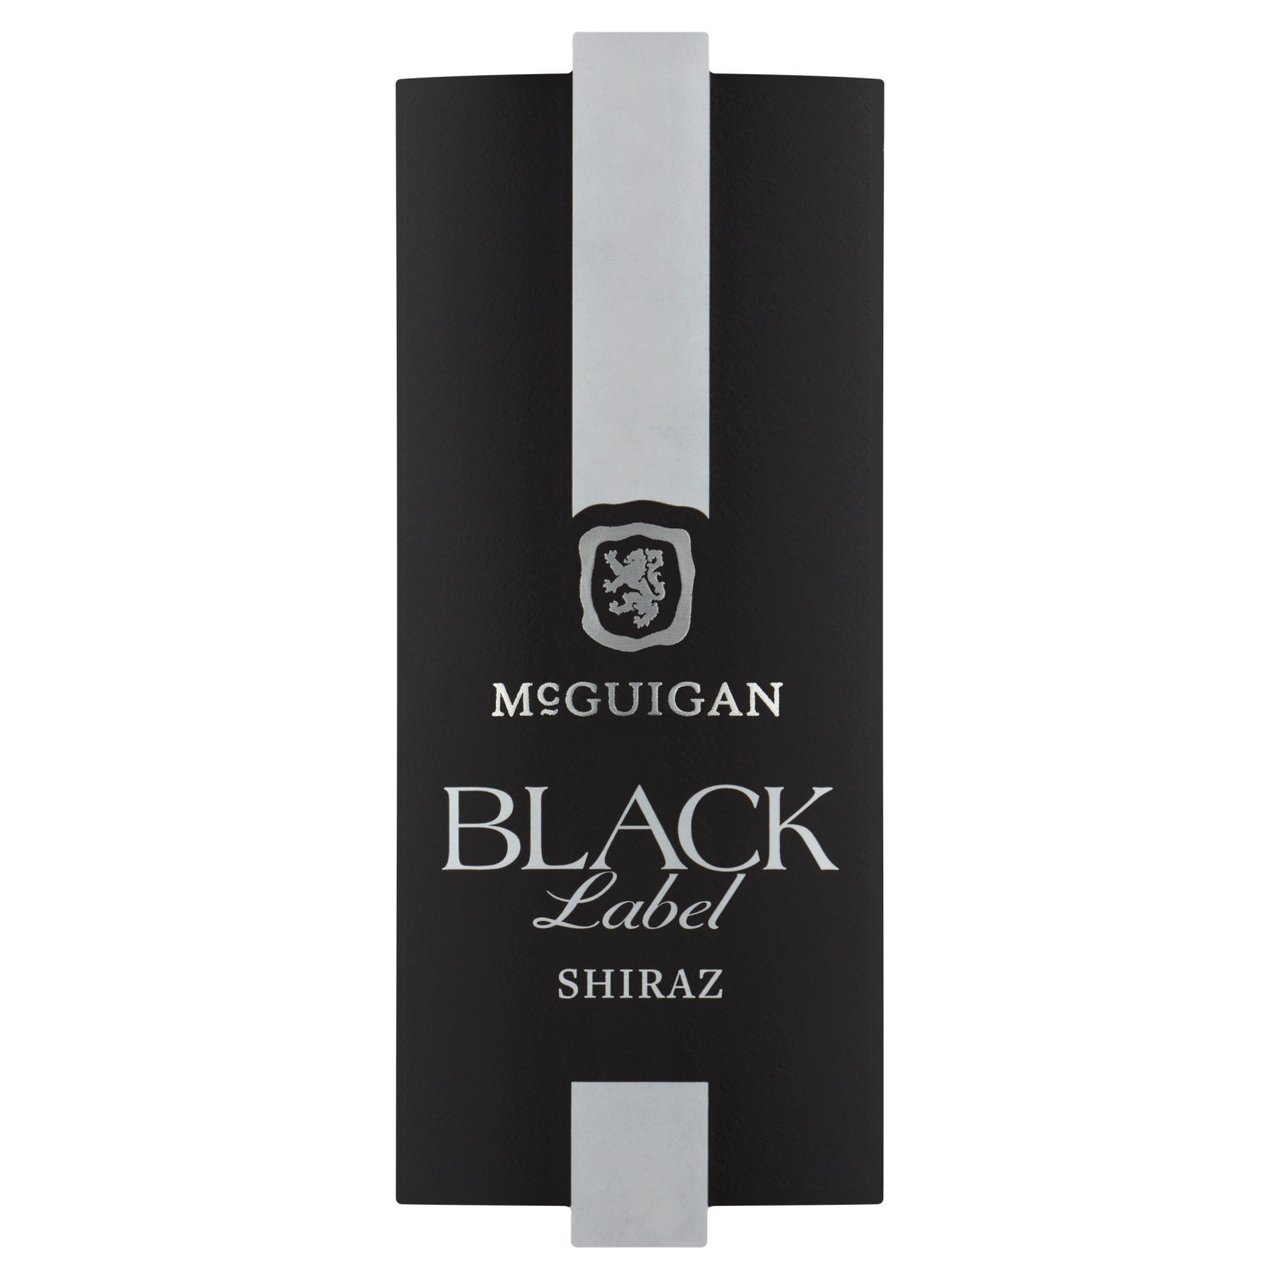 McGuigan Black Label Shiraz 75cl